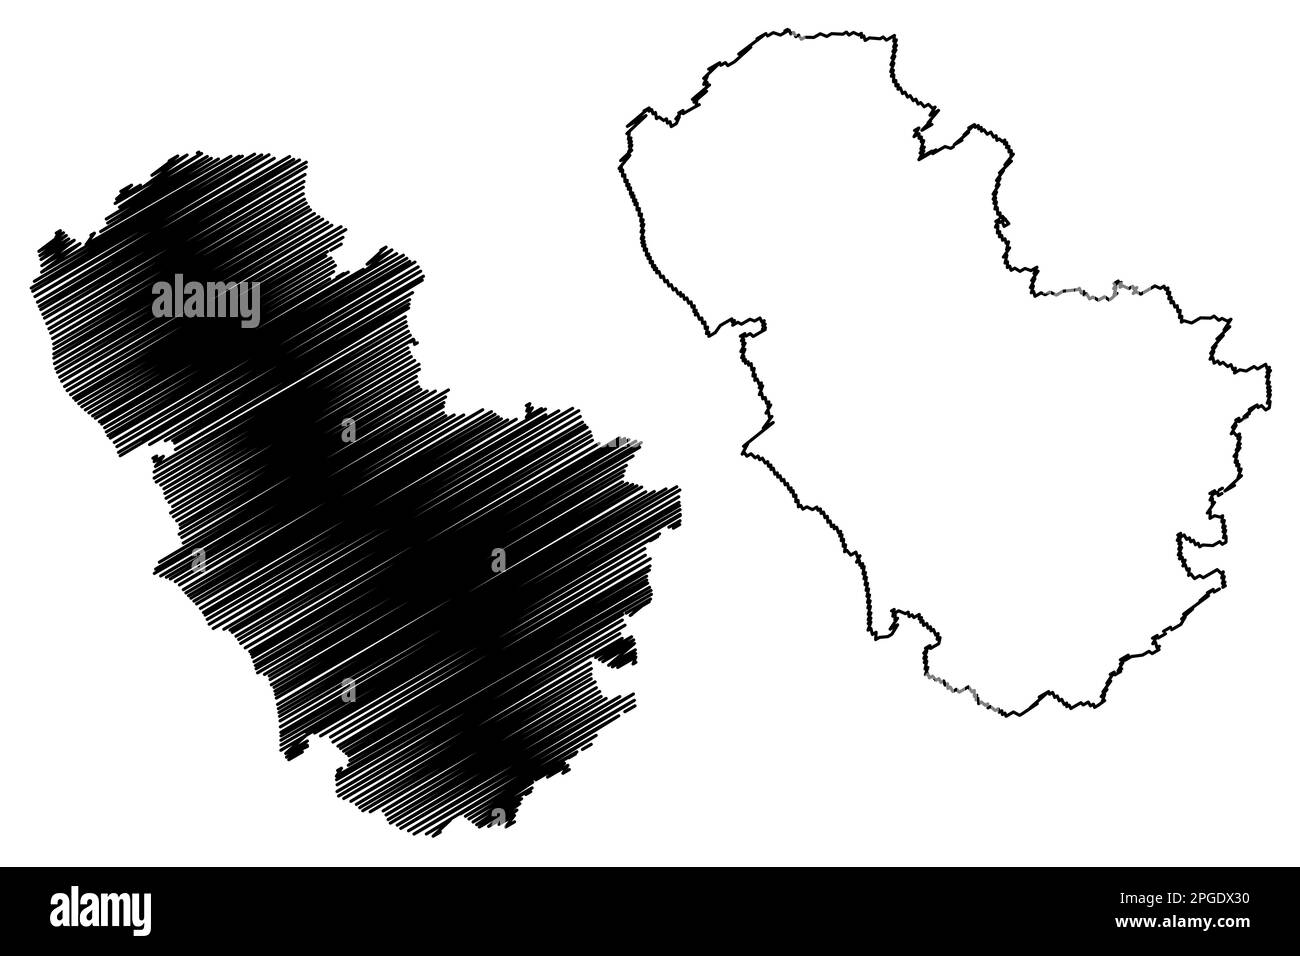 Metropolitan Borough of Rotherham (Royaume-Uni de Grande-Bretagne et d'Irlande du Nord, comté métropolitain et cérémonial du Yorkshire du Sud, Angleterre) Illustration de Vecteur